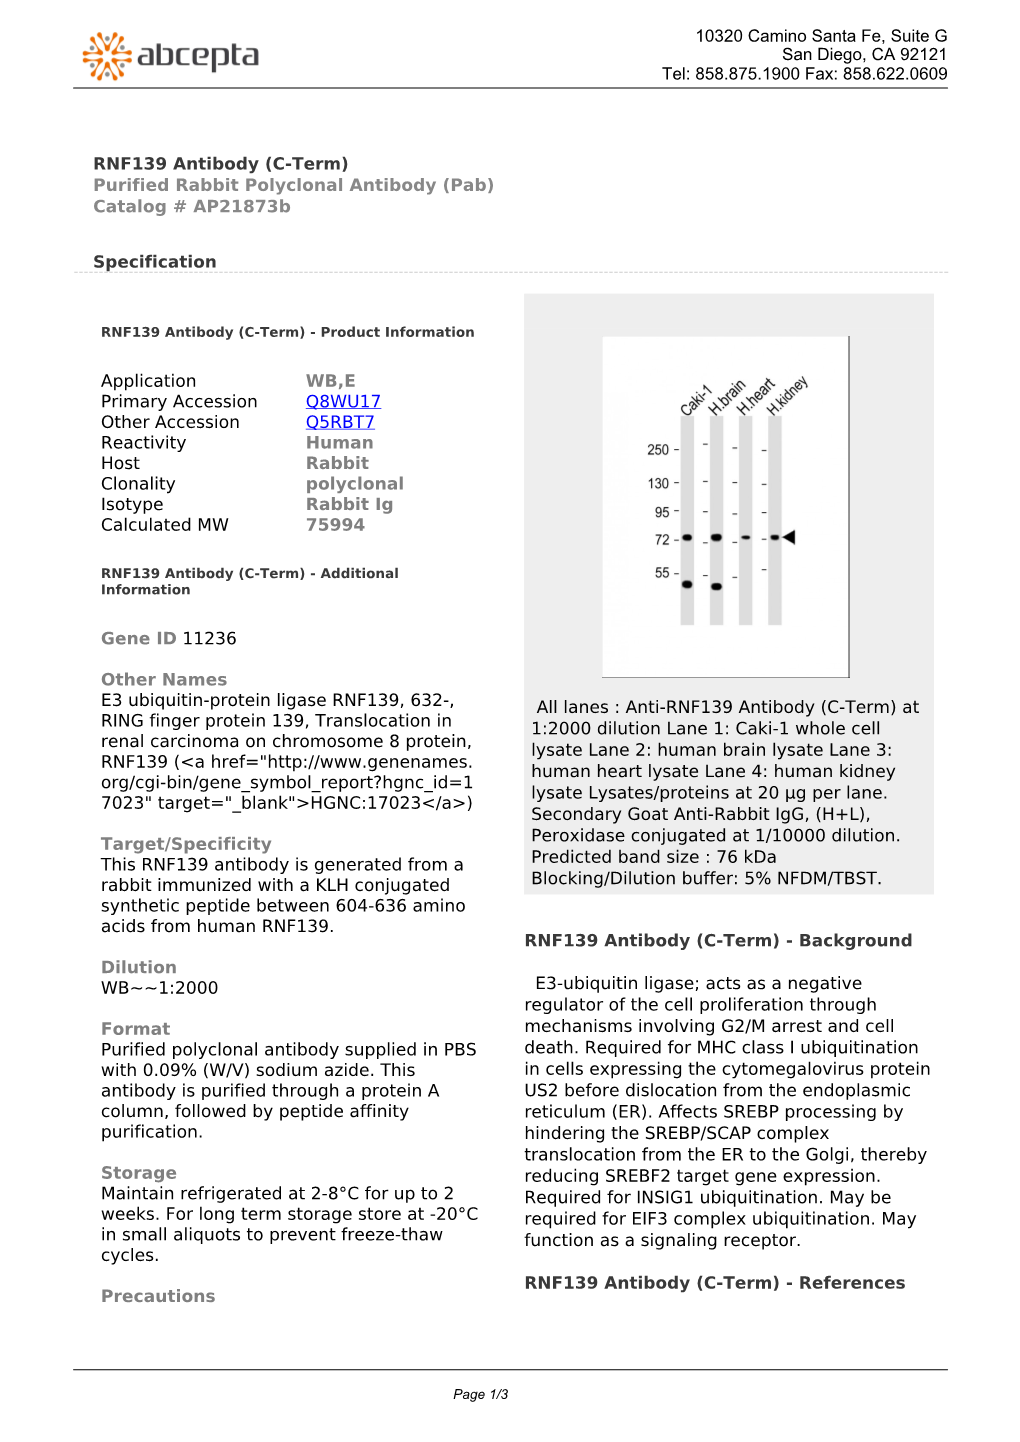 RNF139 Antibody (C-Term) Purified Rabbit Polyclonal Antibody (Pab) Catalog # Ap21873b